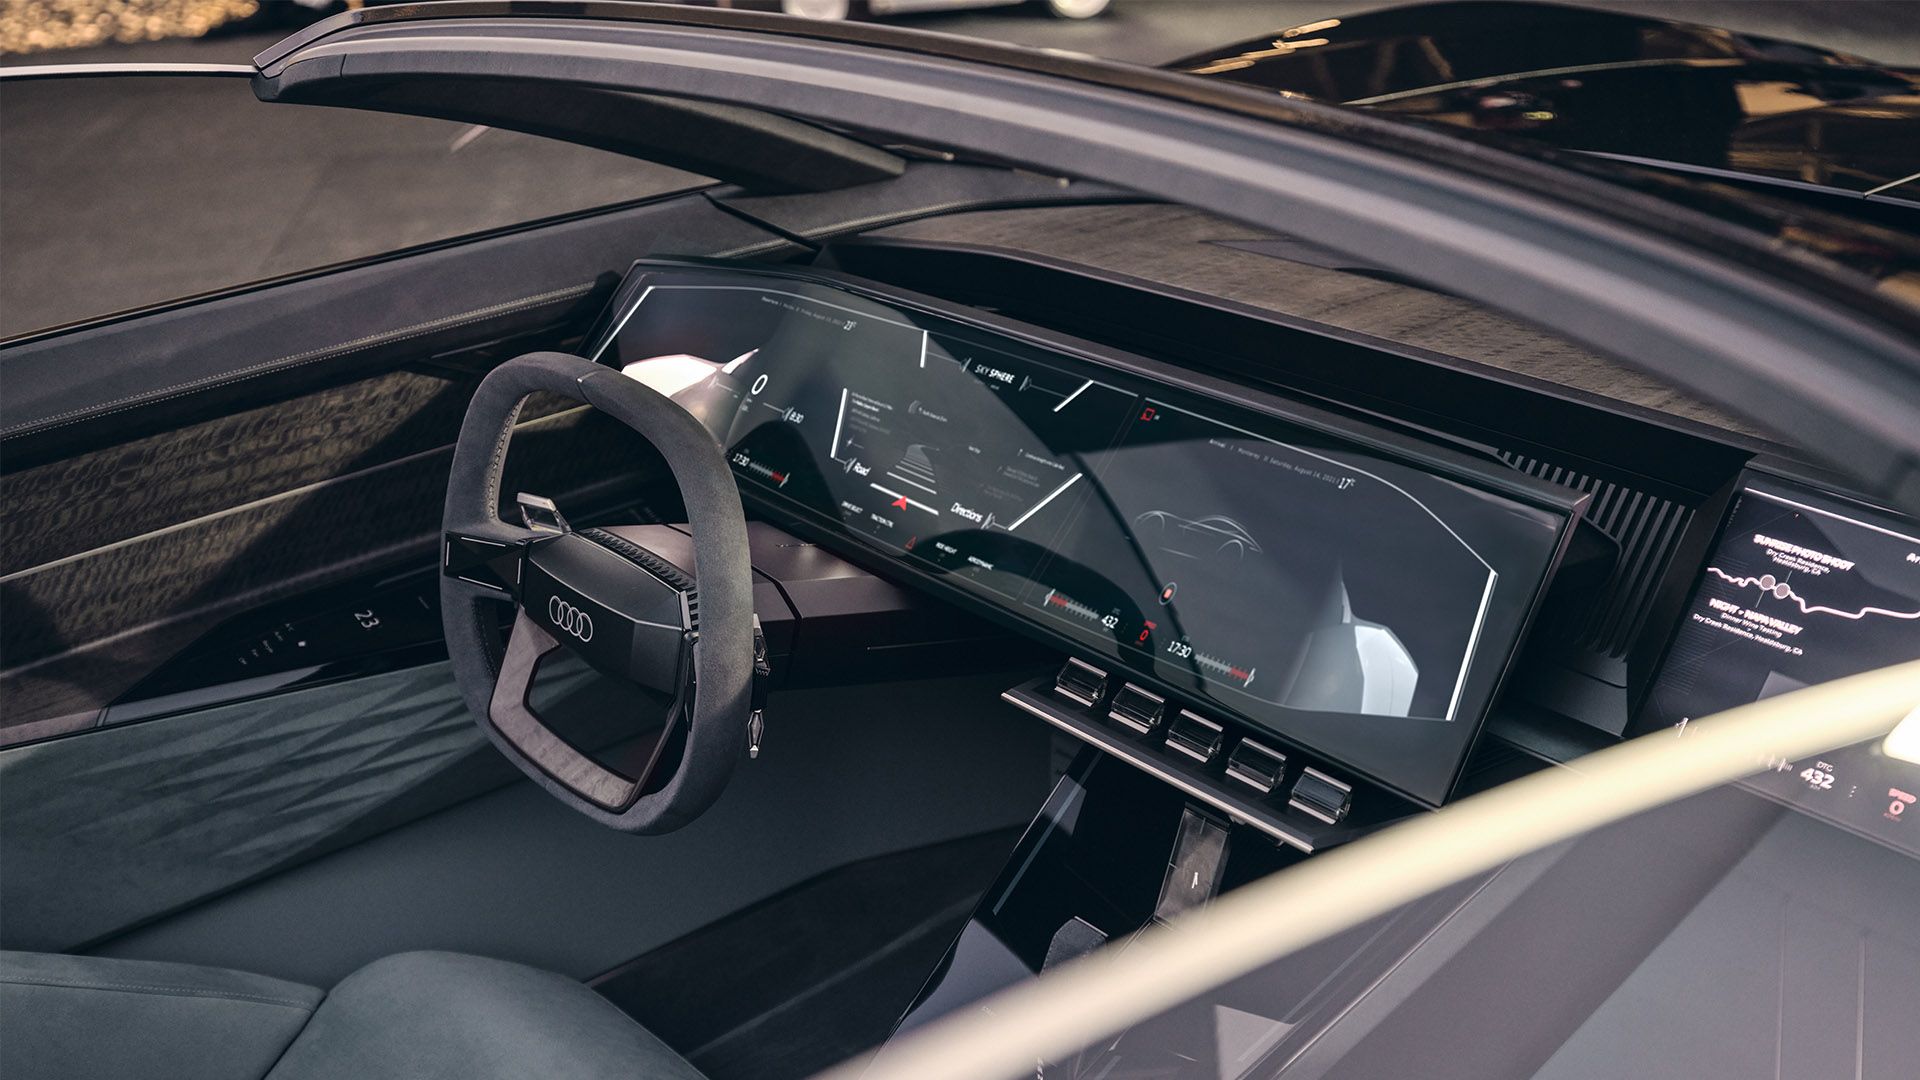 Vista del asiento del conductor, los pedales, el volante y los monitores del Audi skysphere concept en el modo "Sport".